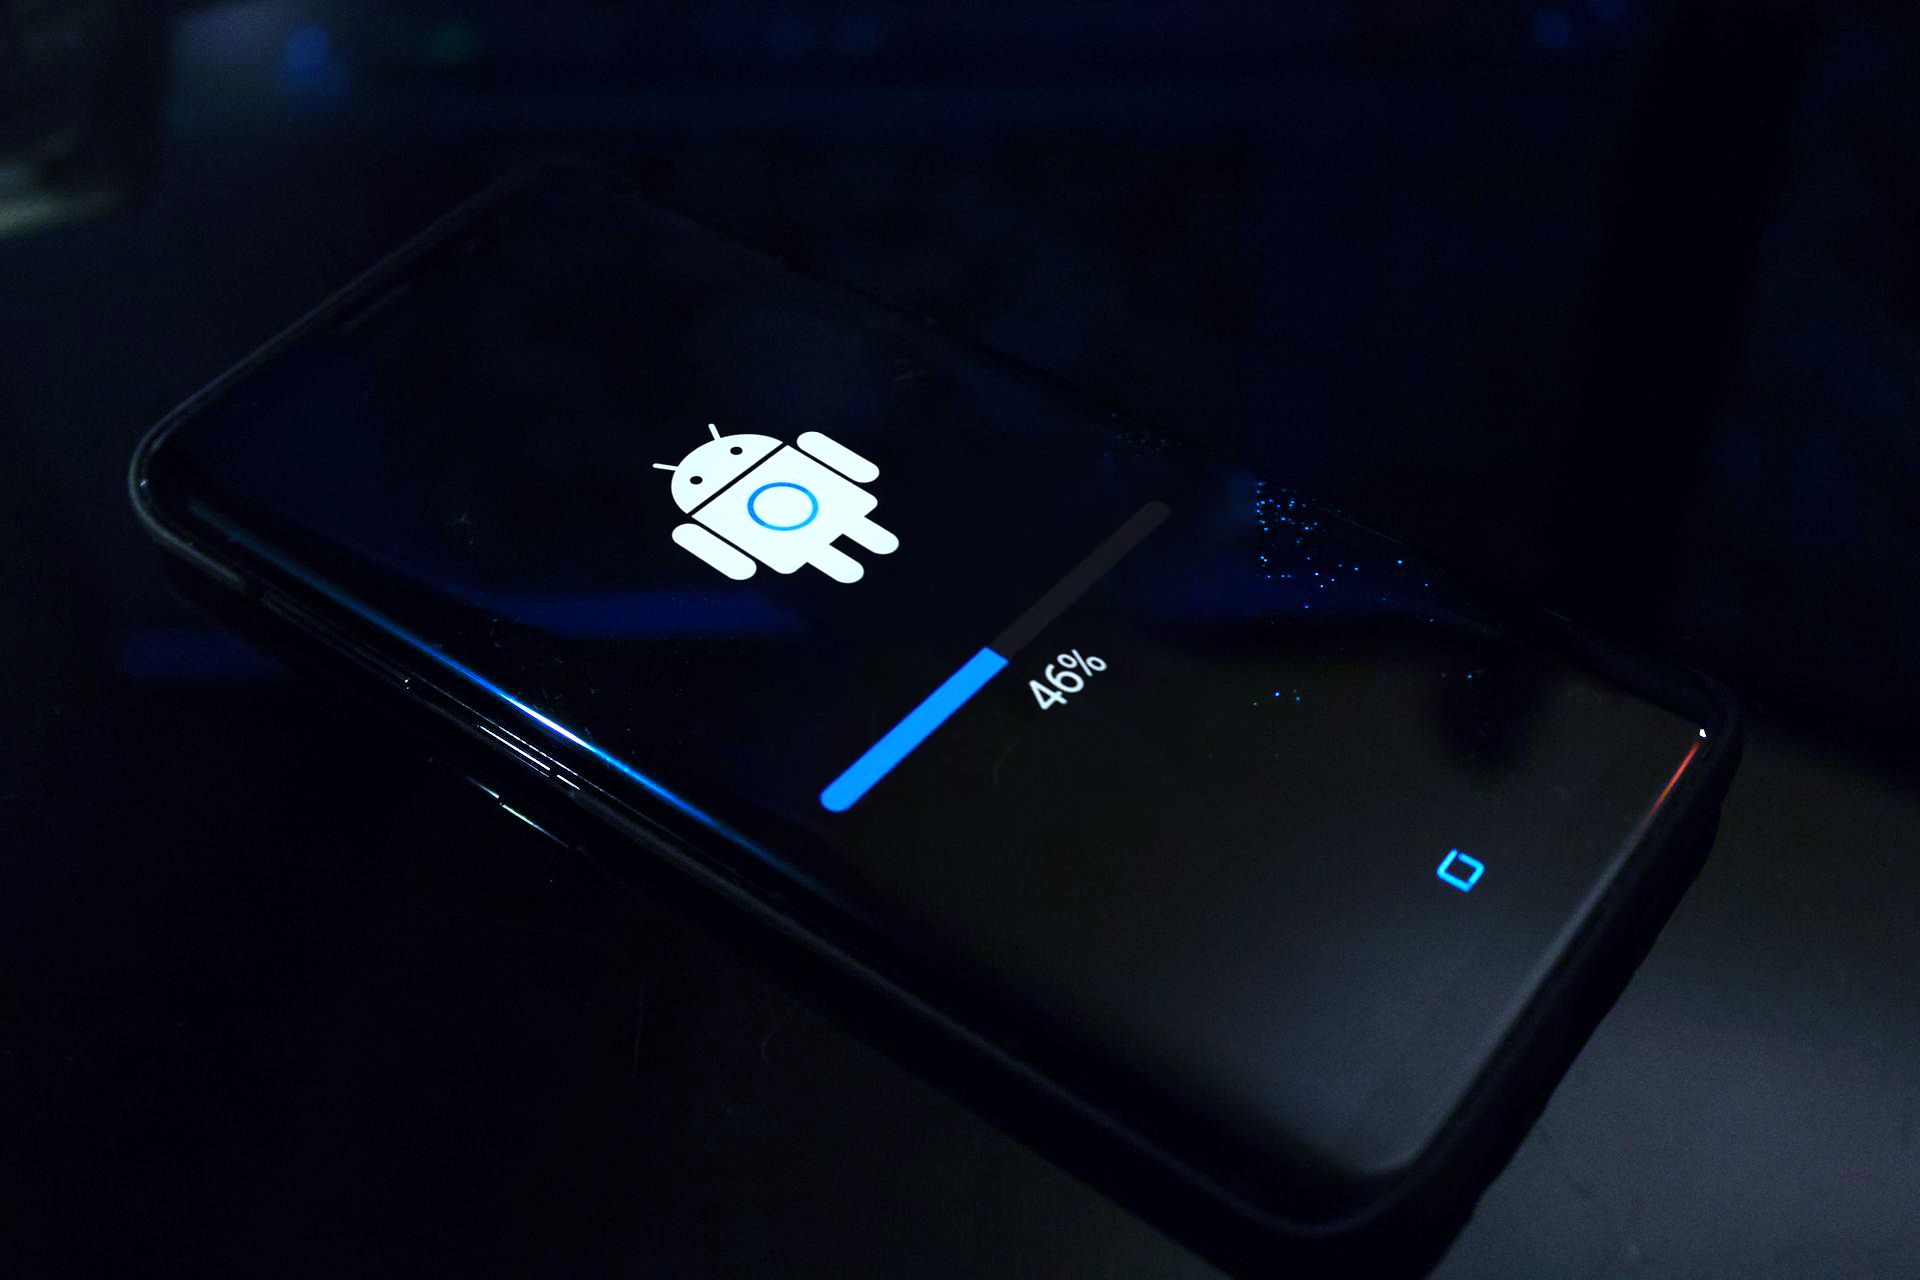 Um smartphone Android apoiado em uma superfície exibindo uma tela de atualização com um ícone de robô Android e uma barra de progresso indicando 46% de conclusão.